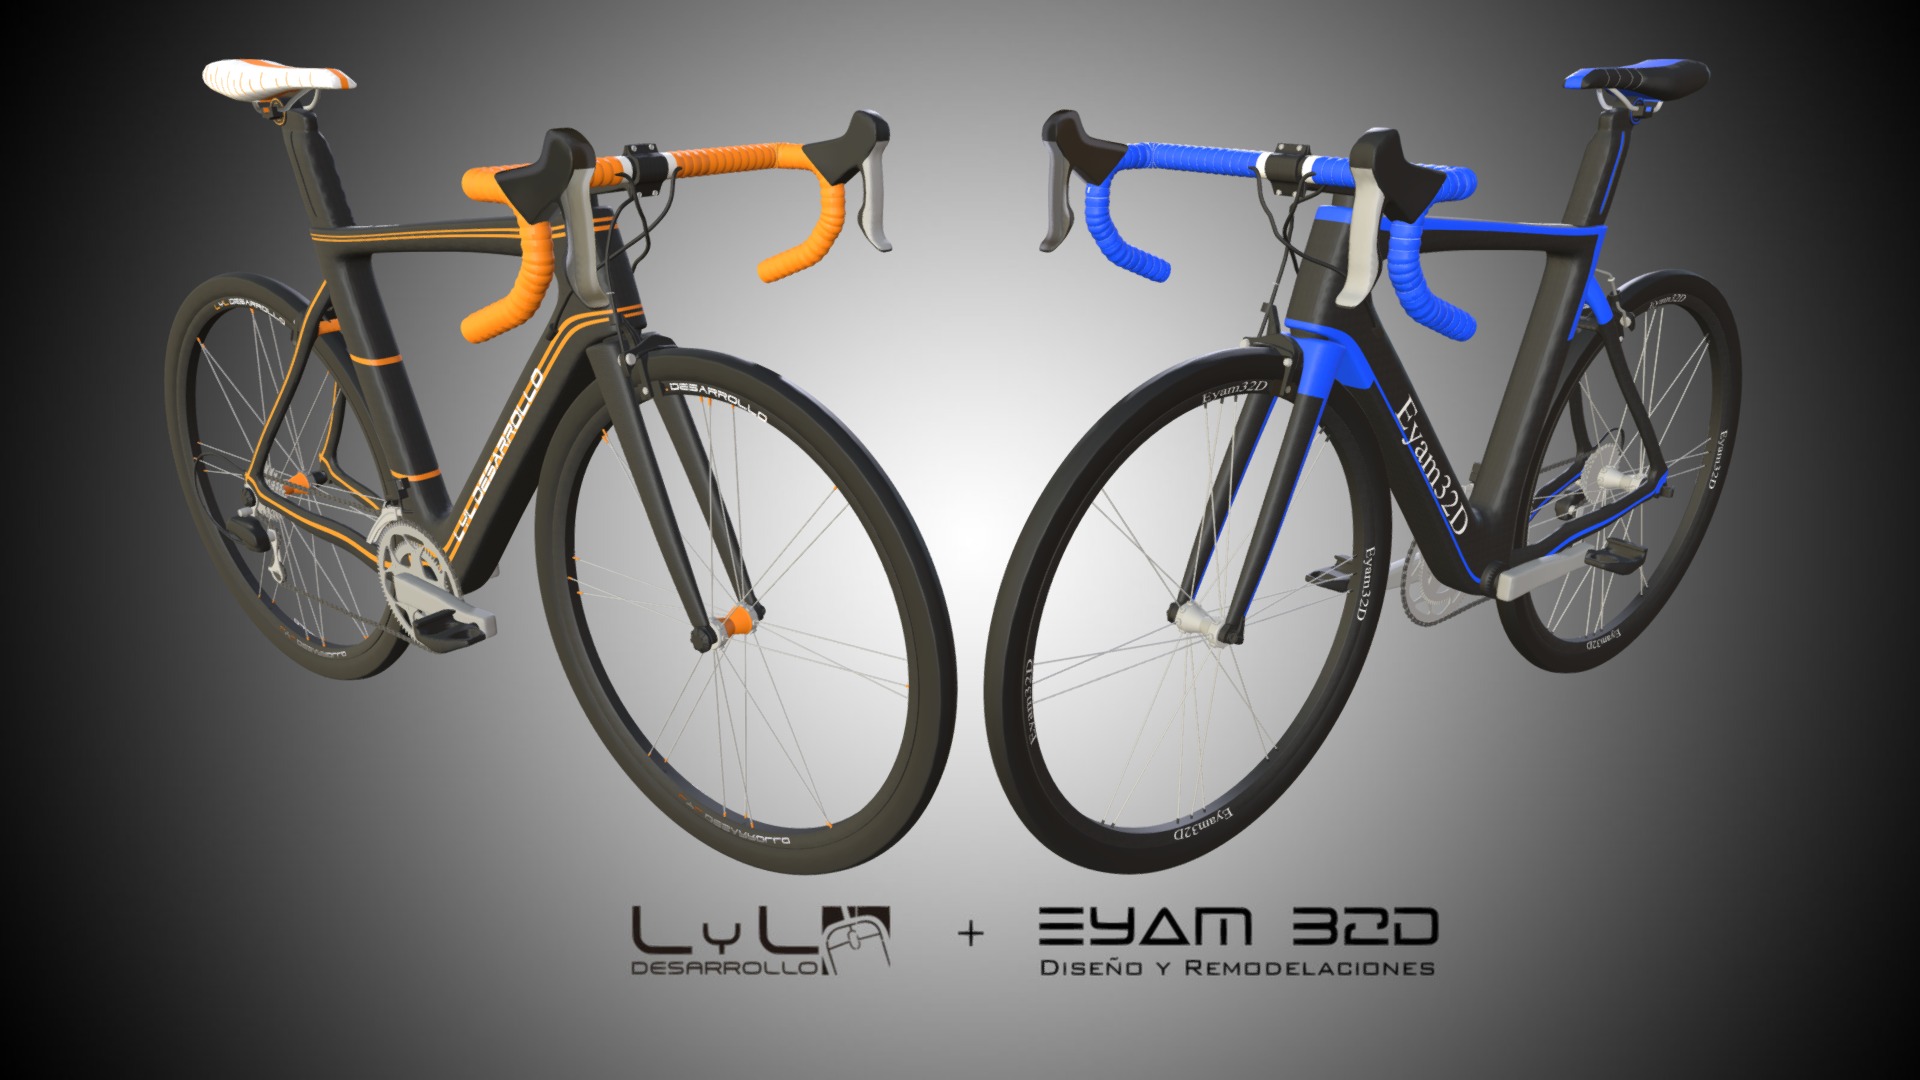 3D model Bicicletas LyLdesarrollo y Eyam32D - This is a 3D model of the Bicicletas LyLdesarrollo y Eyam32D. The 3D model is about diagram.